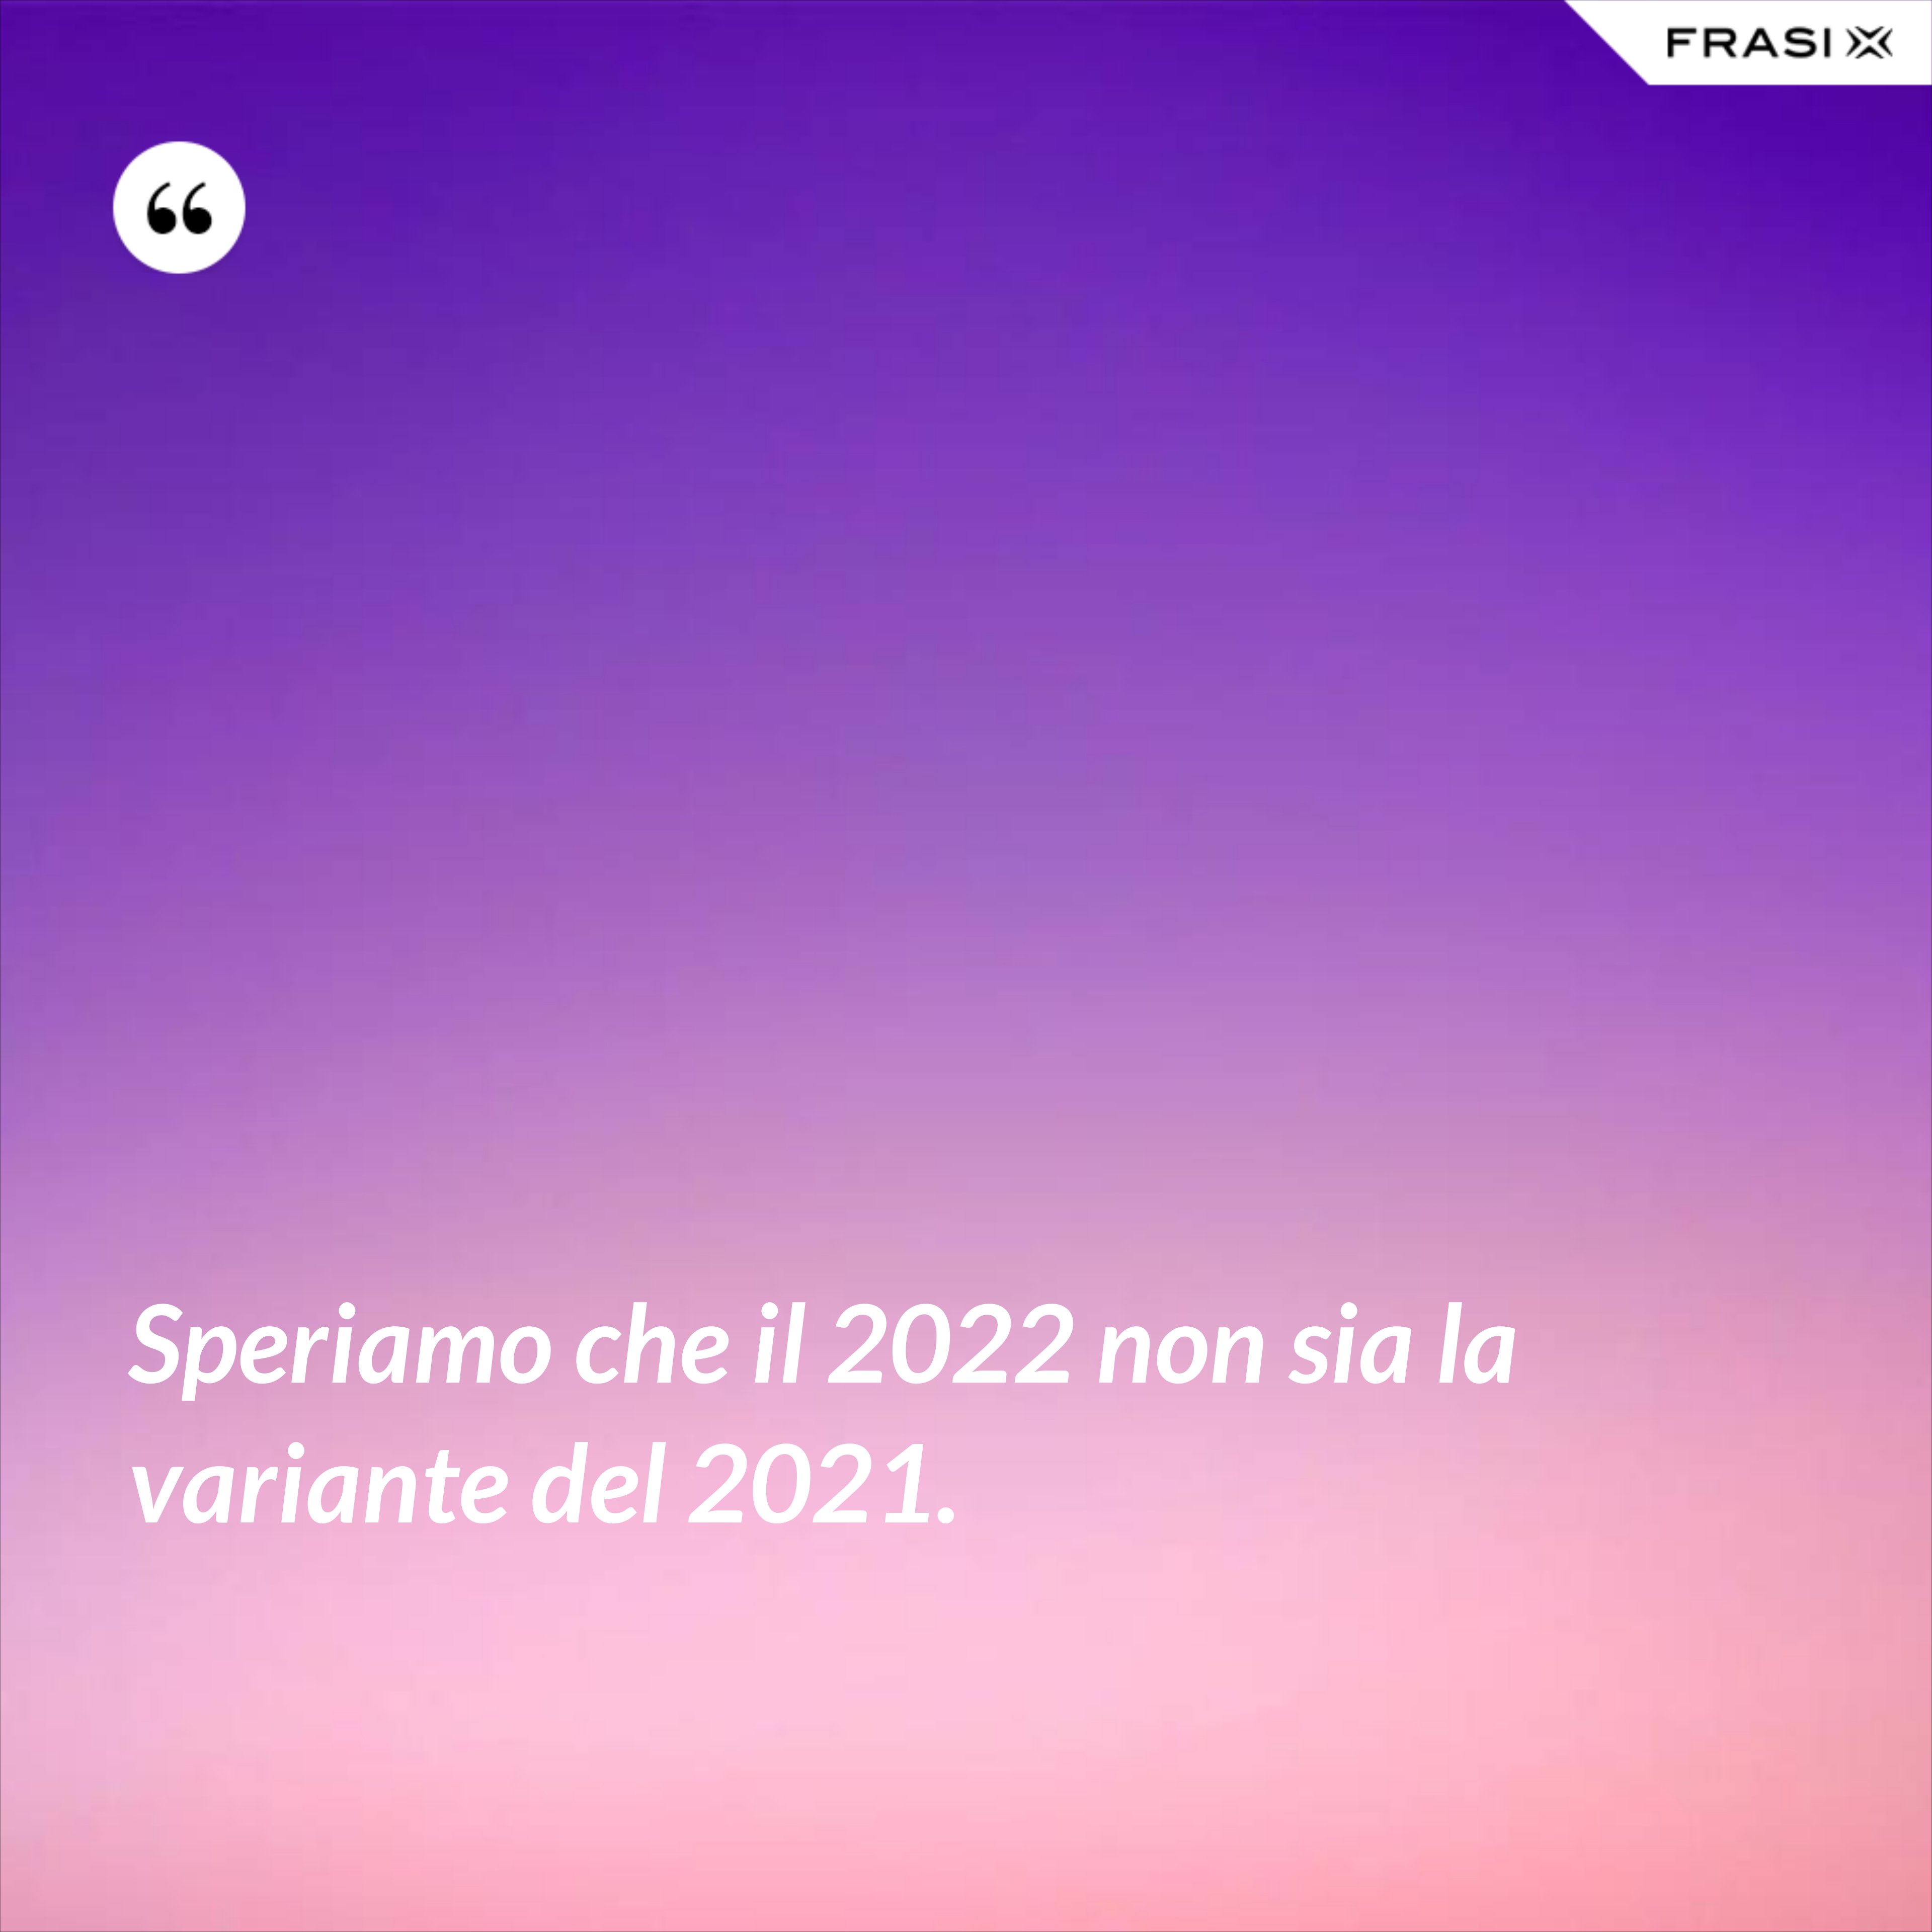 Speriamo che il 2022 non sia la variante del 2021. - Anonimo